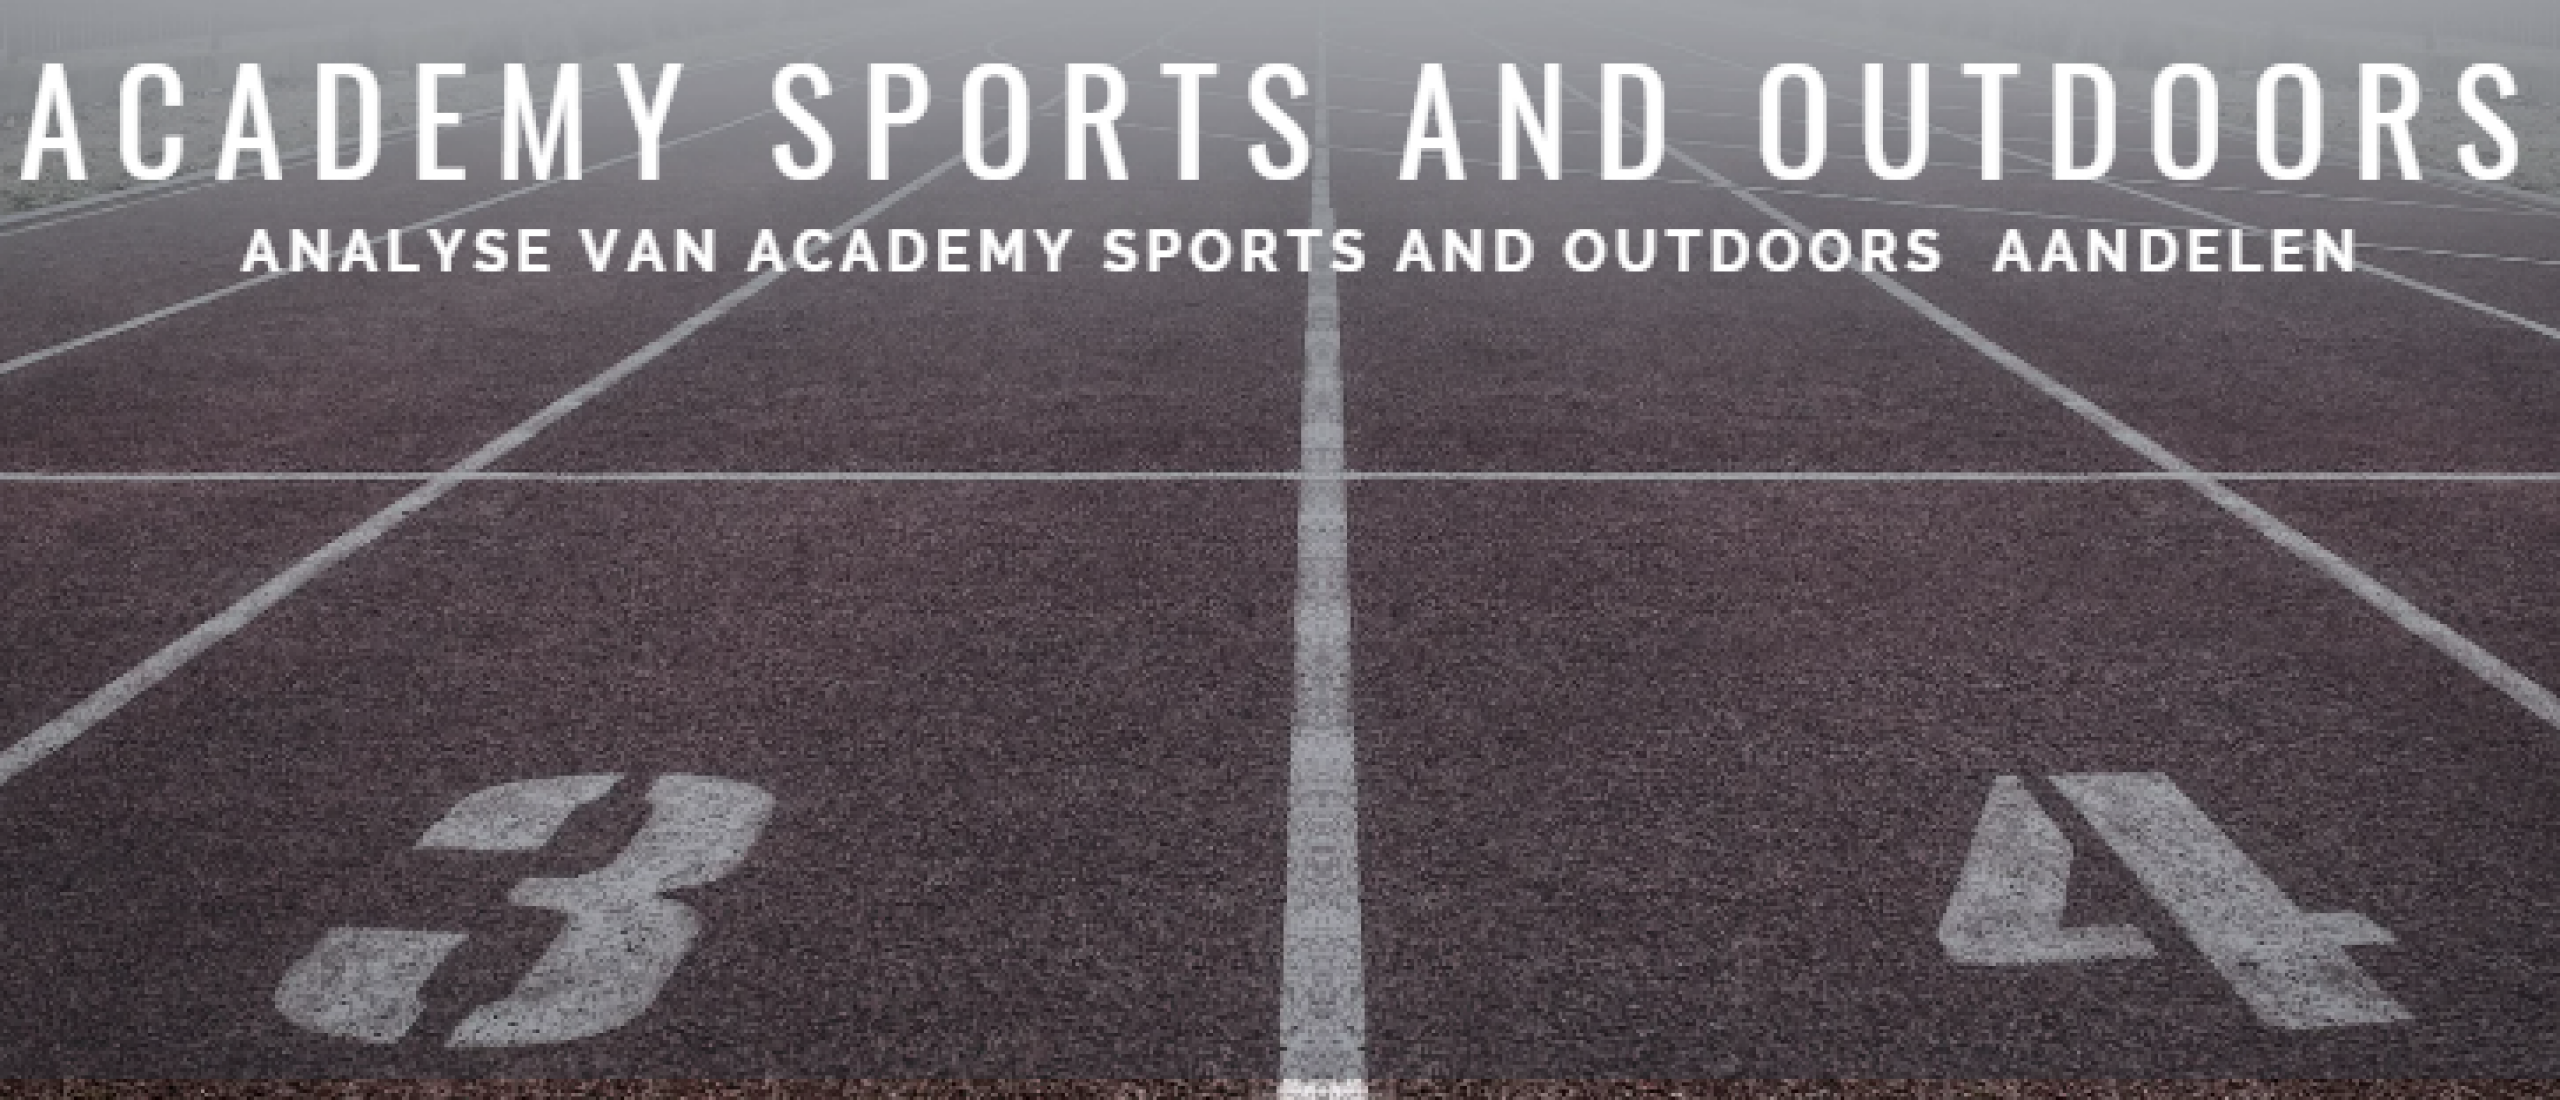 Academy Sports and Outdoors aandelen kopen? Analyse +47% Groei | Happy Investors